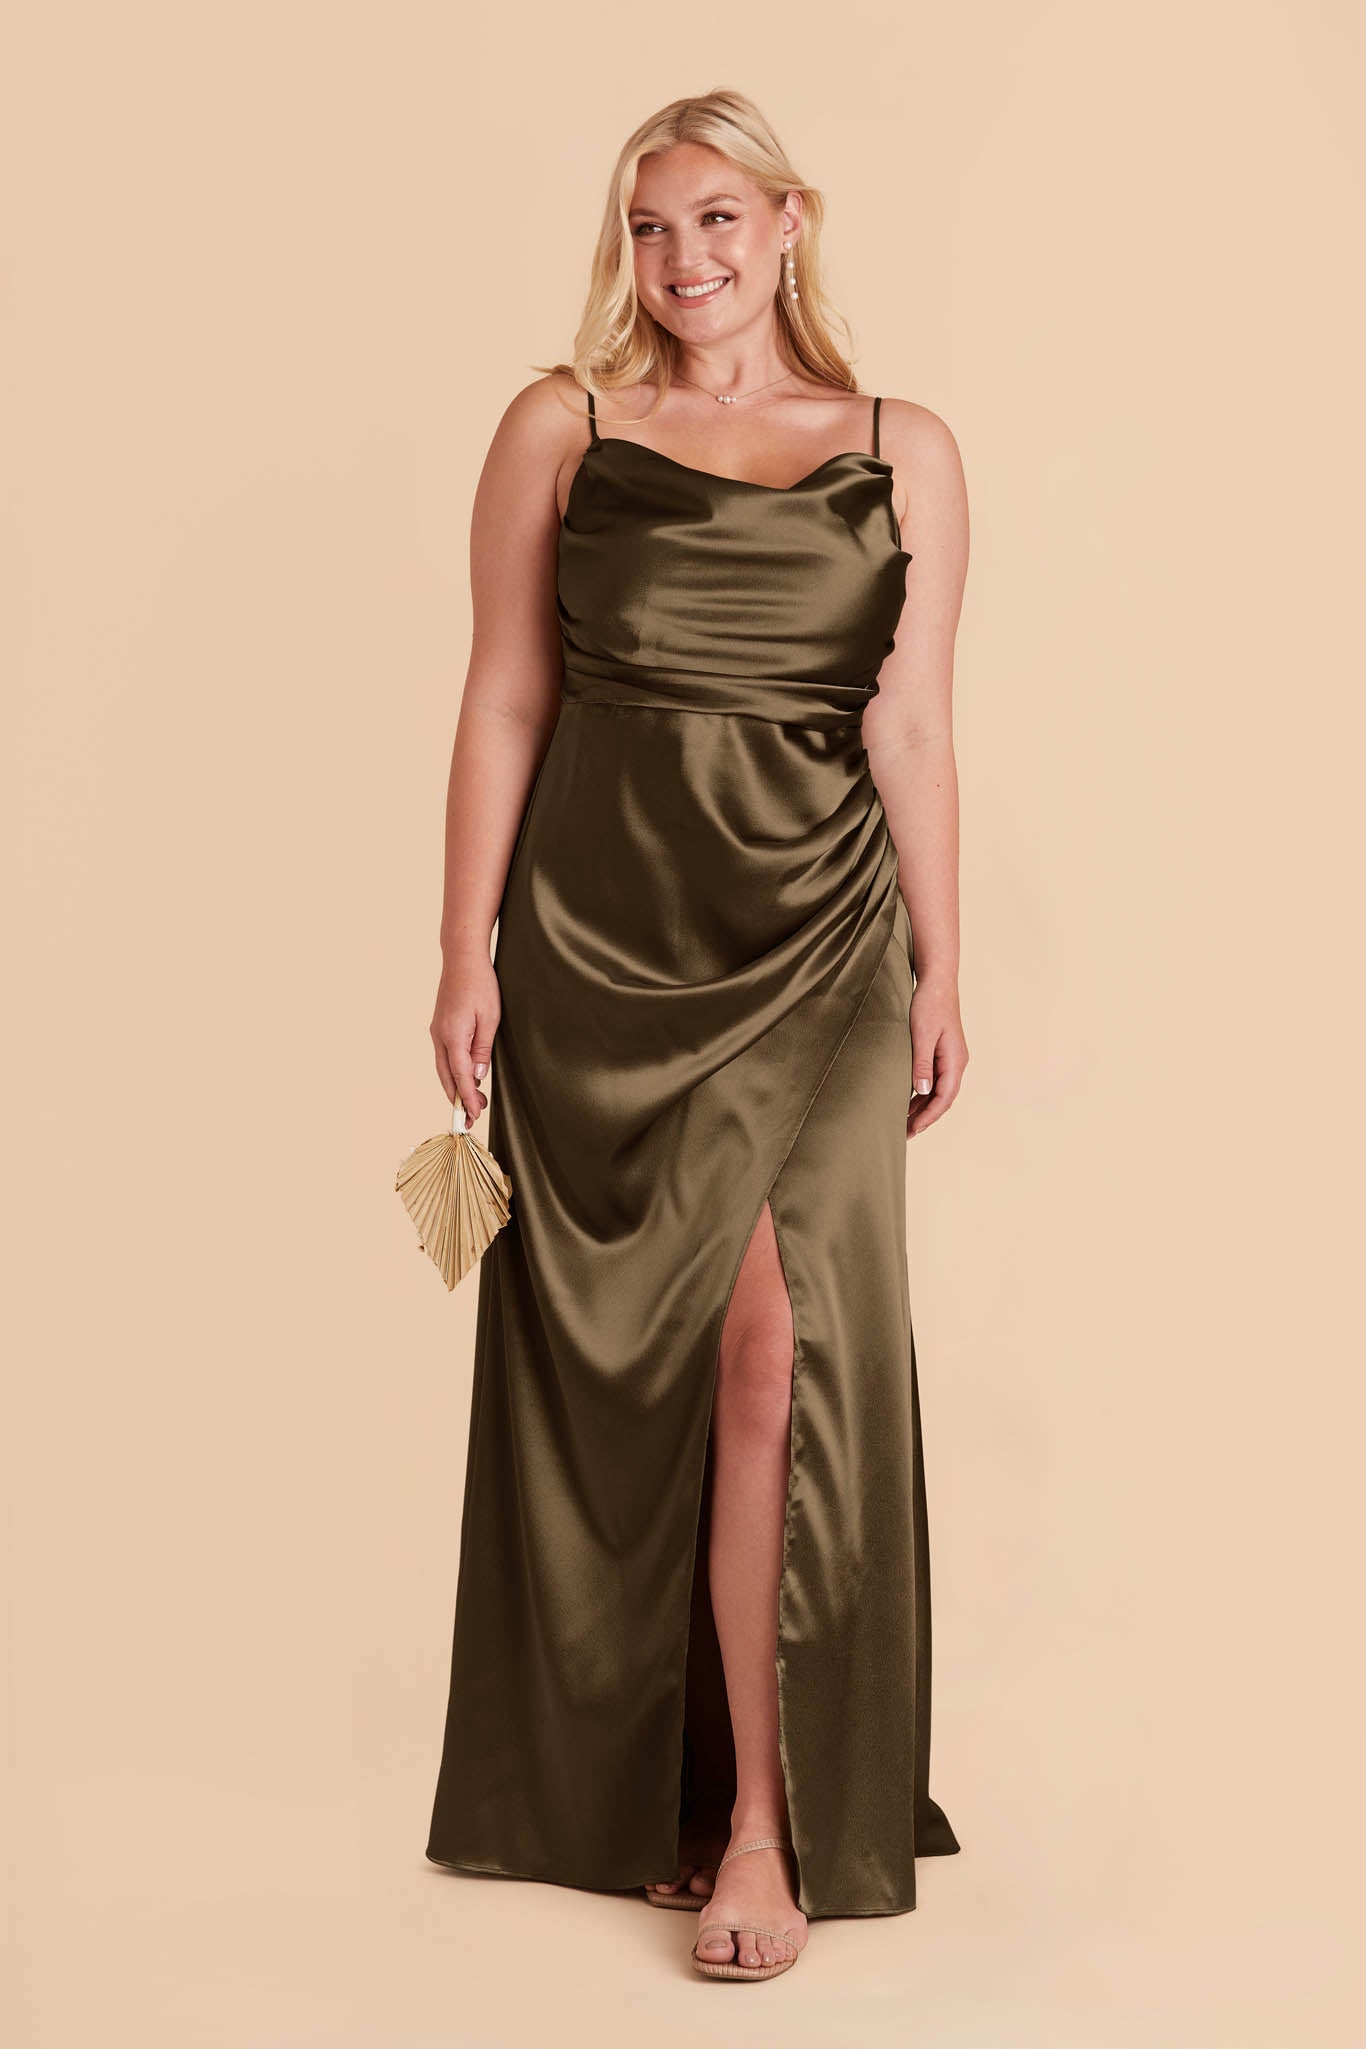 Olive Lydia Shiny Satin Dress by Birdy Grey